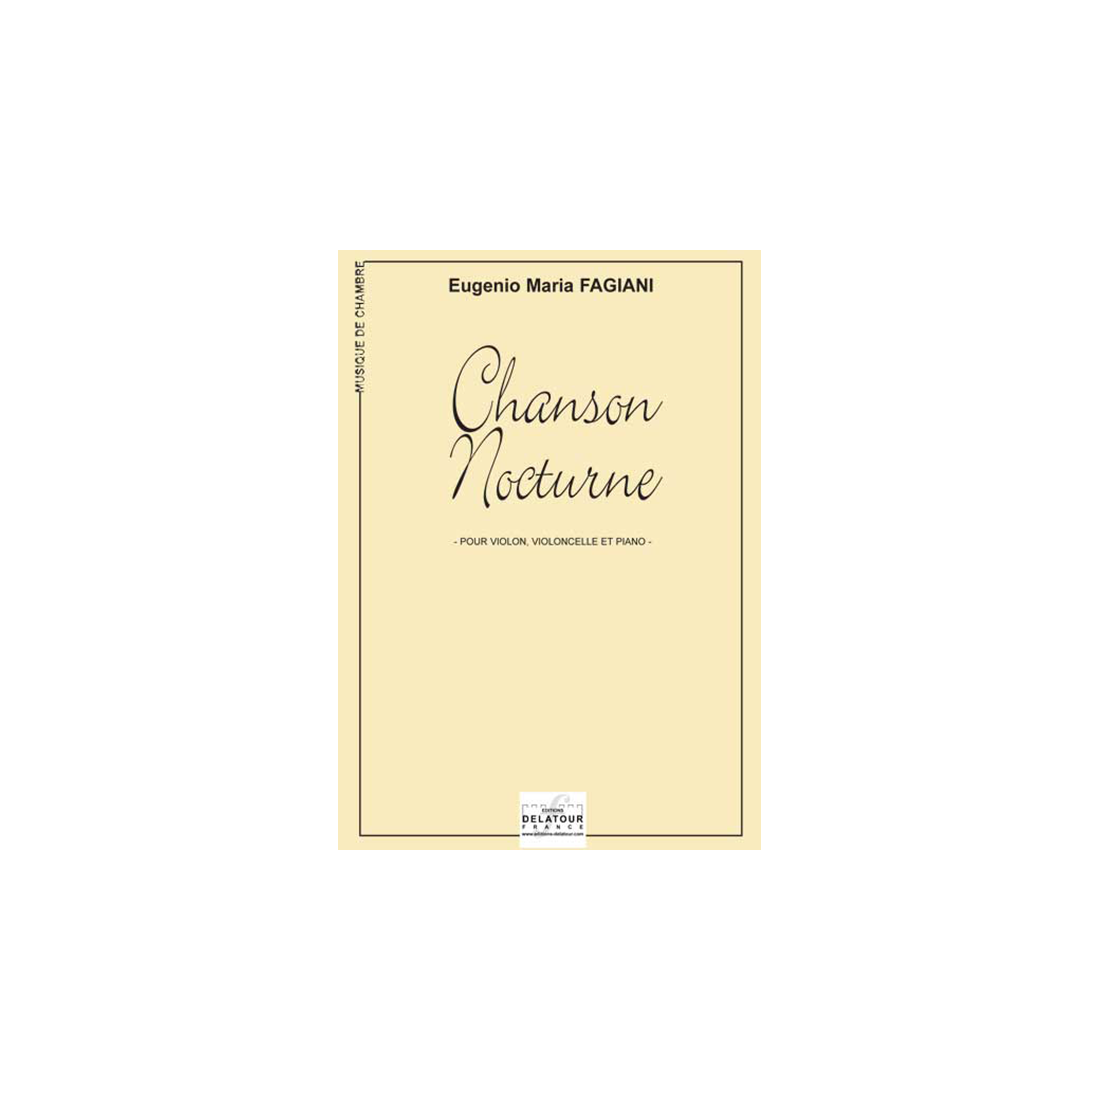 Chanson nocturne for violin, cello and piano